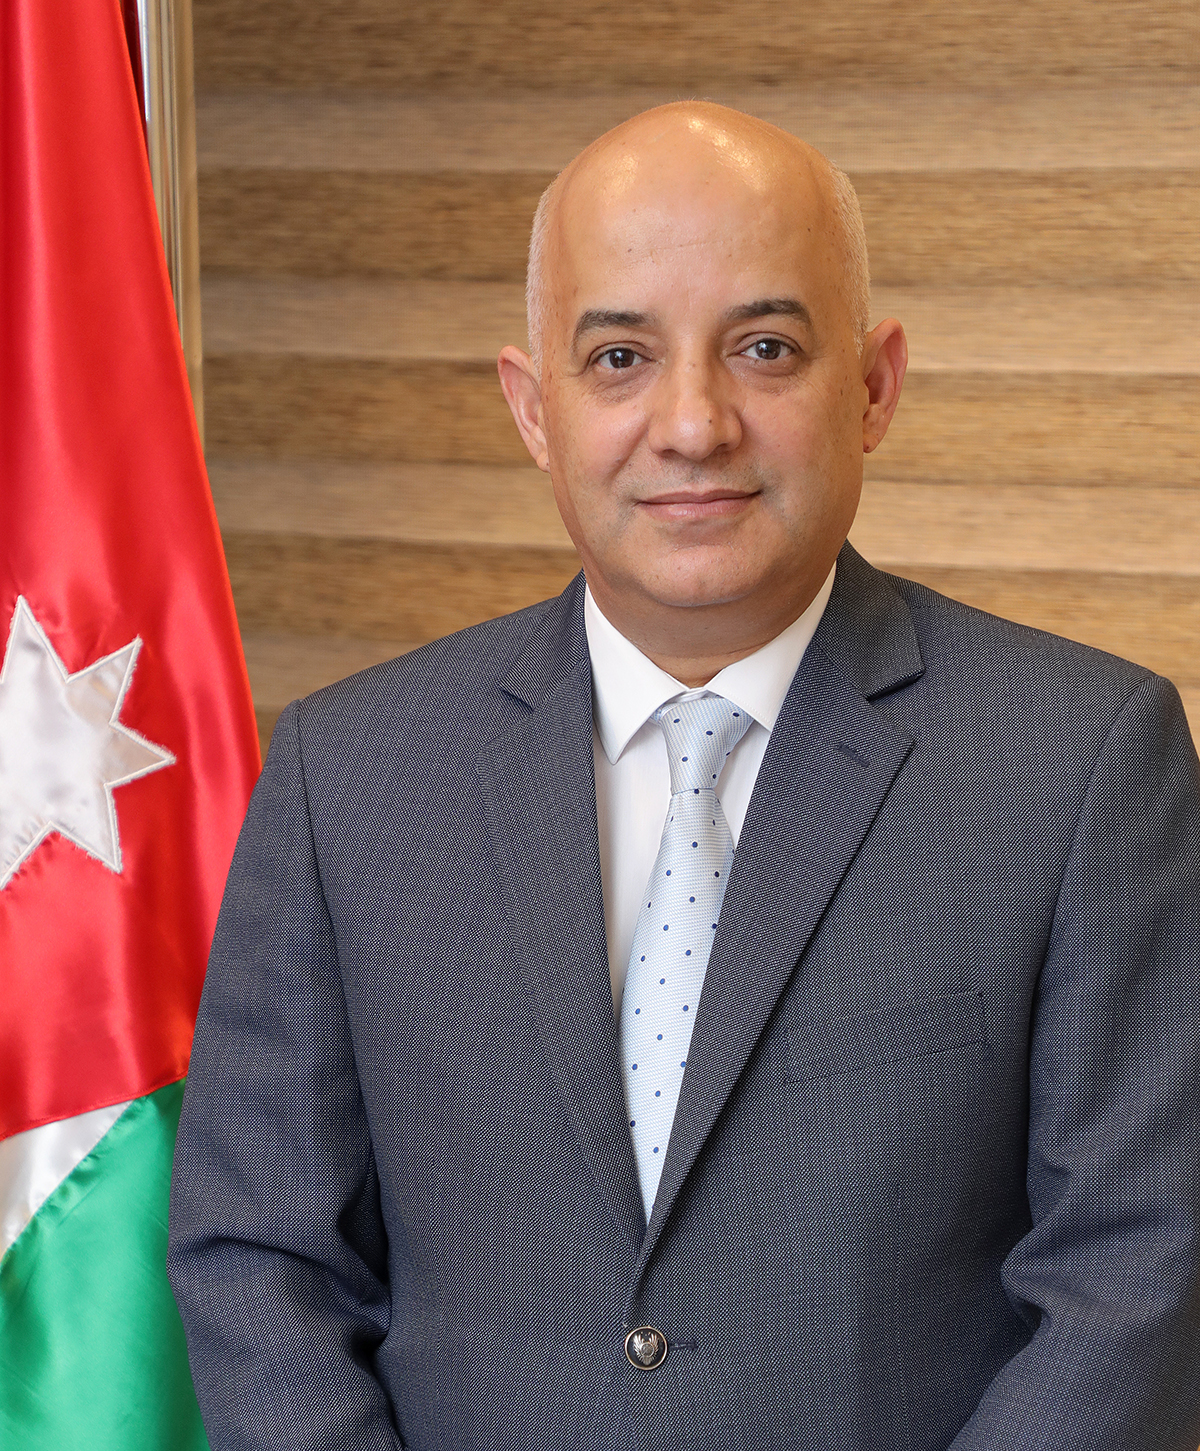 وزير الاتصال الحكومي: الموقف الأردني تجاه الحرب على غزة ثابت ومشرف